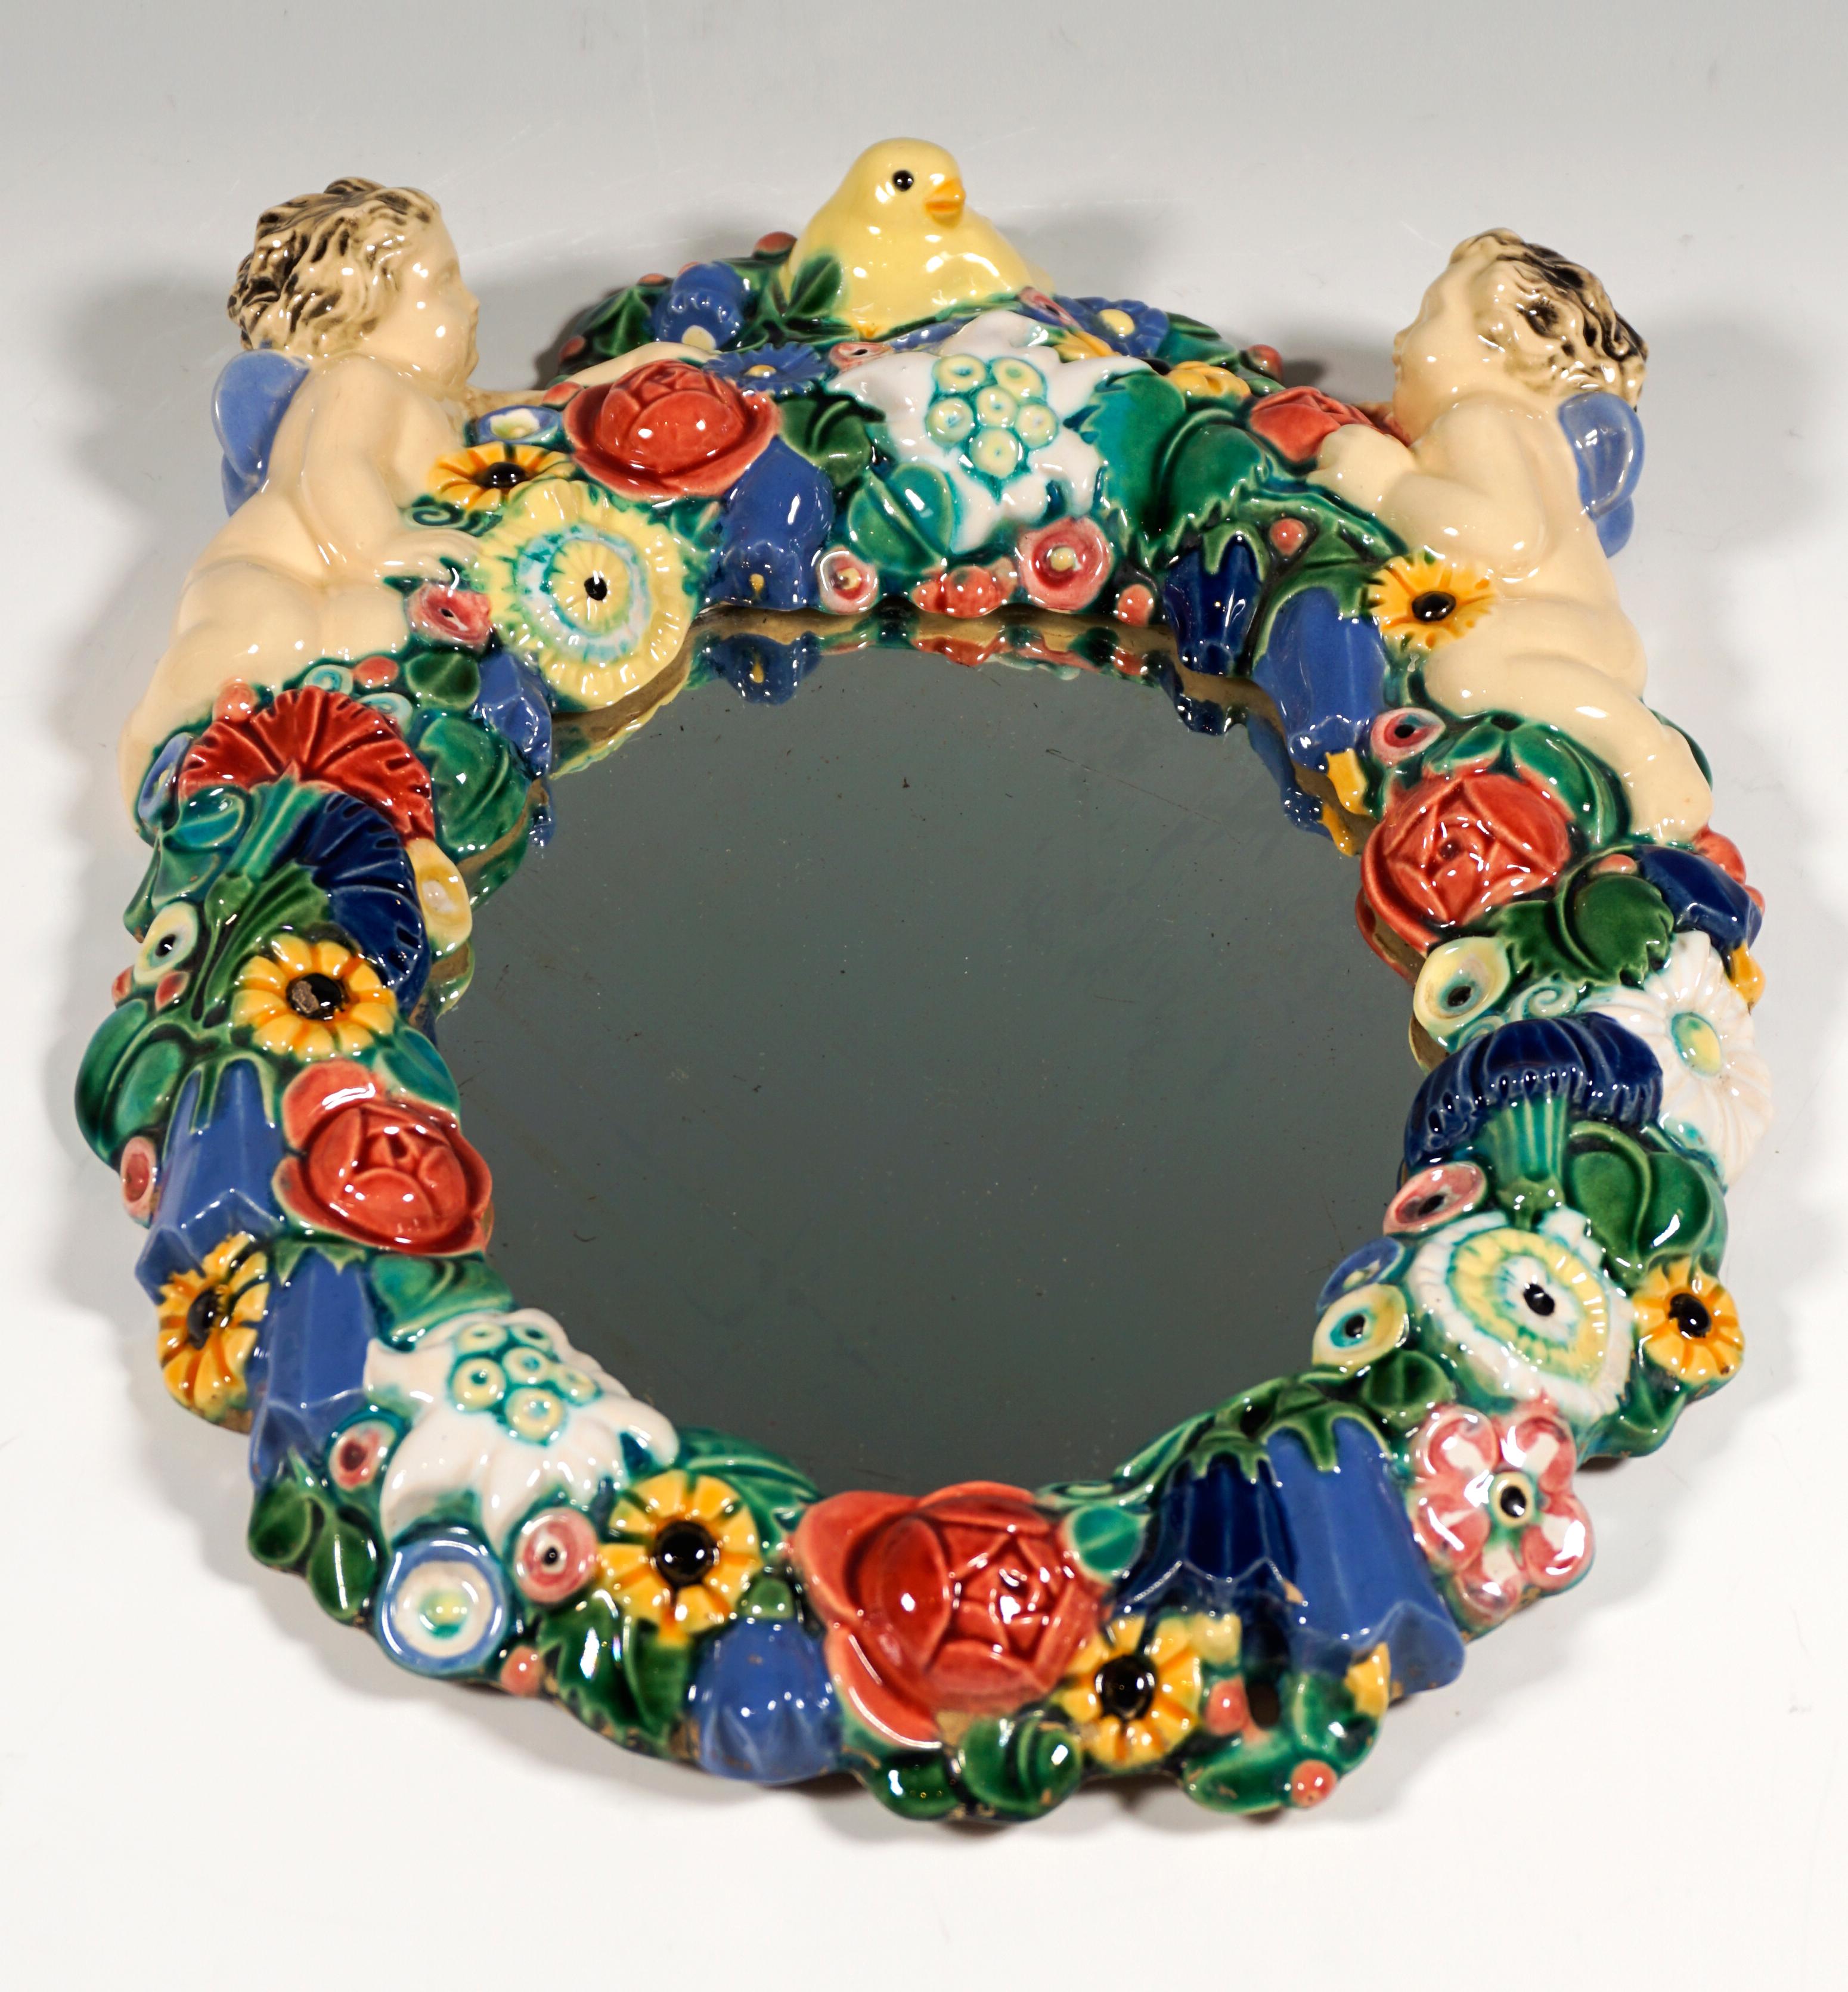 Miroir ovale encadré d'une couronne florale de couleur dense formée de céramique, sur le bord supérieur deux putti ailés, entre eux un oiseau au centre.

Par Michael Powolny (1871 - 1954)
Aujourd'hui, les experts en art attestent que le travail de